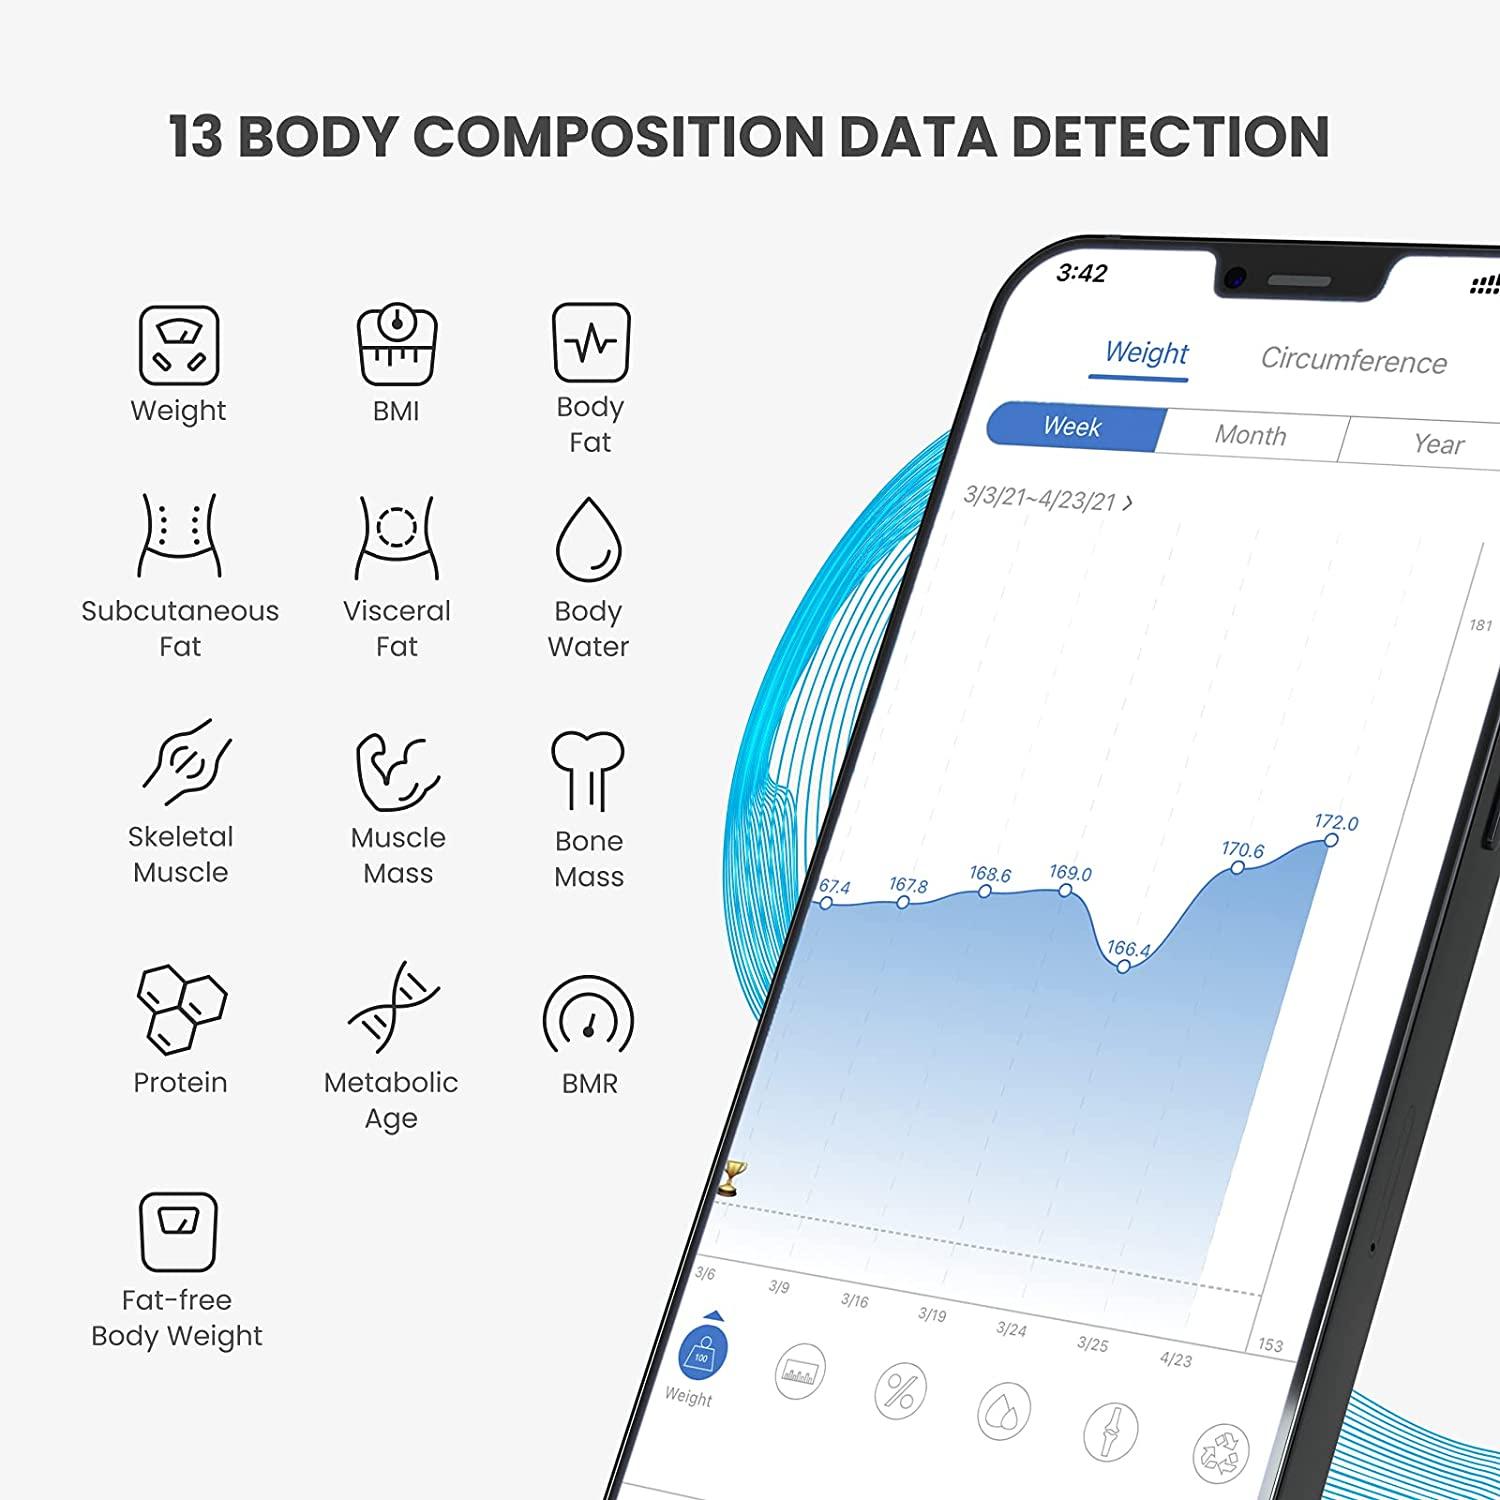 RENPHO Body Fat Scale Smart BMI Scale Digital Bathroom Wireless Weight Scale  - Black